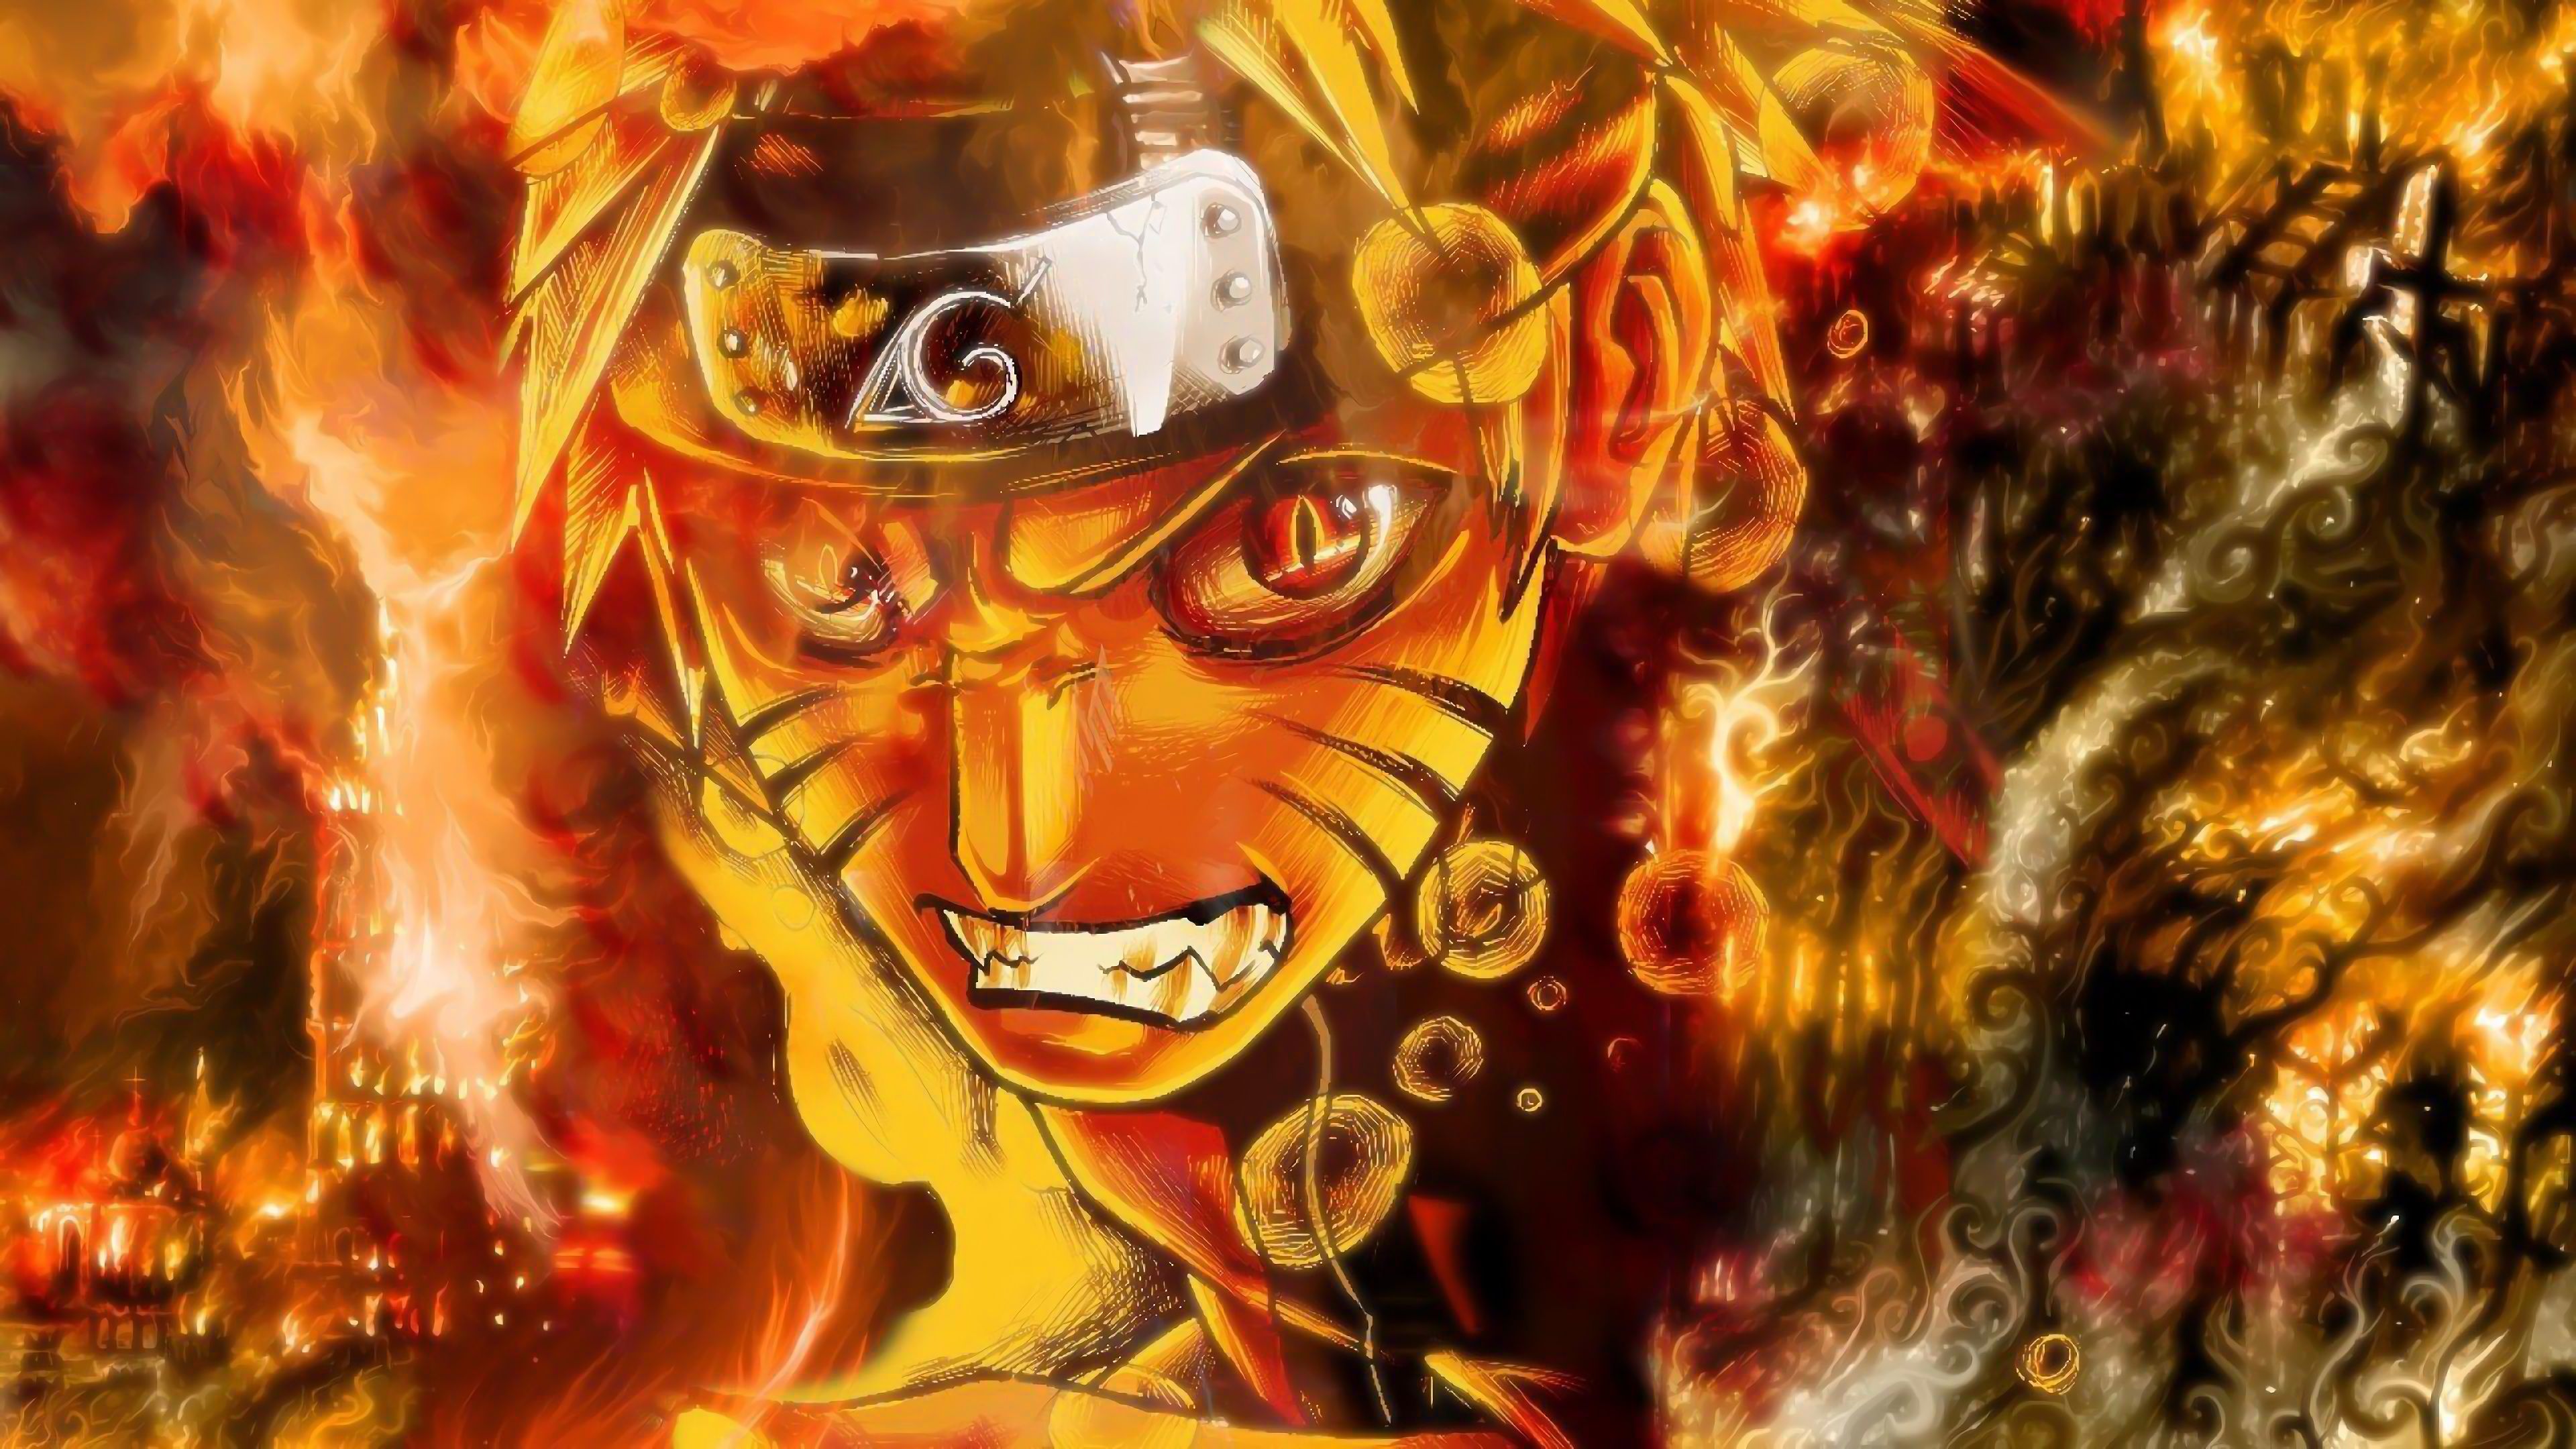 Anime Naruto Wallpapers on WallpaperDog